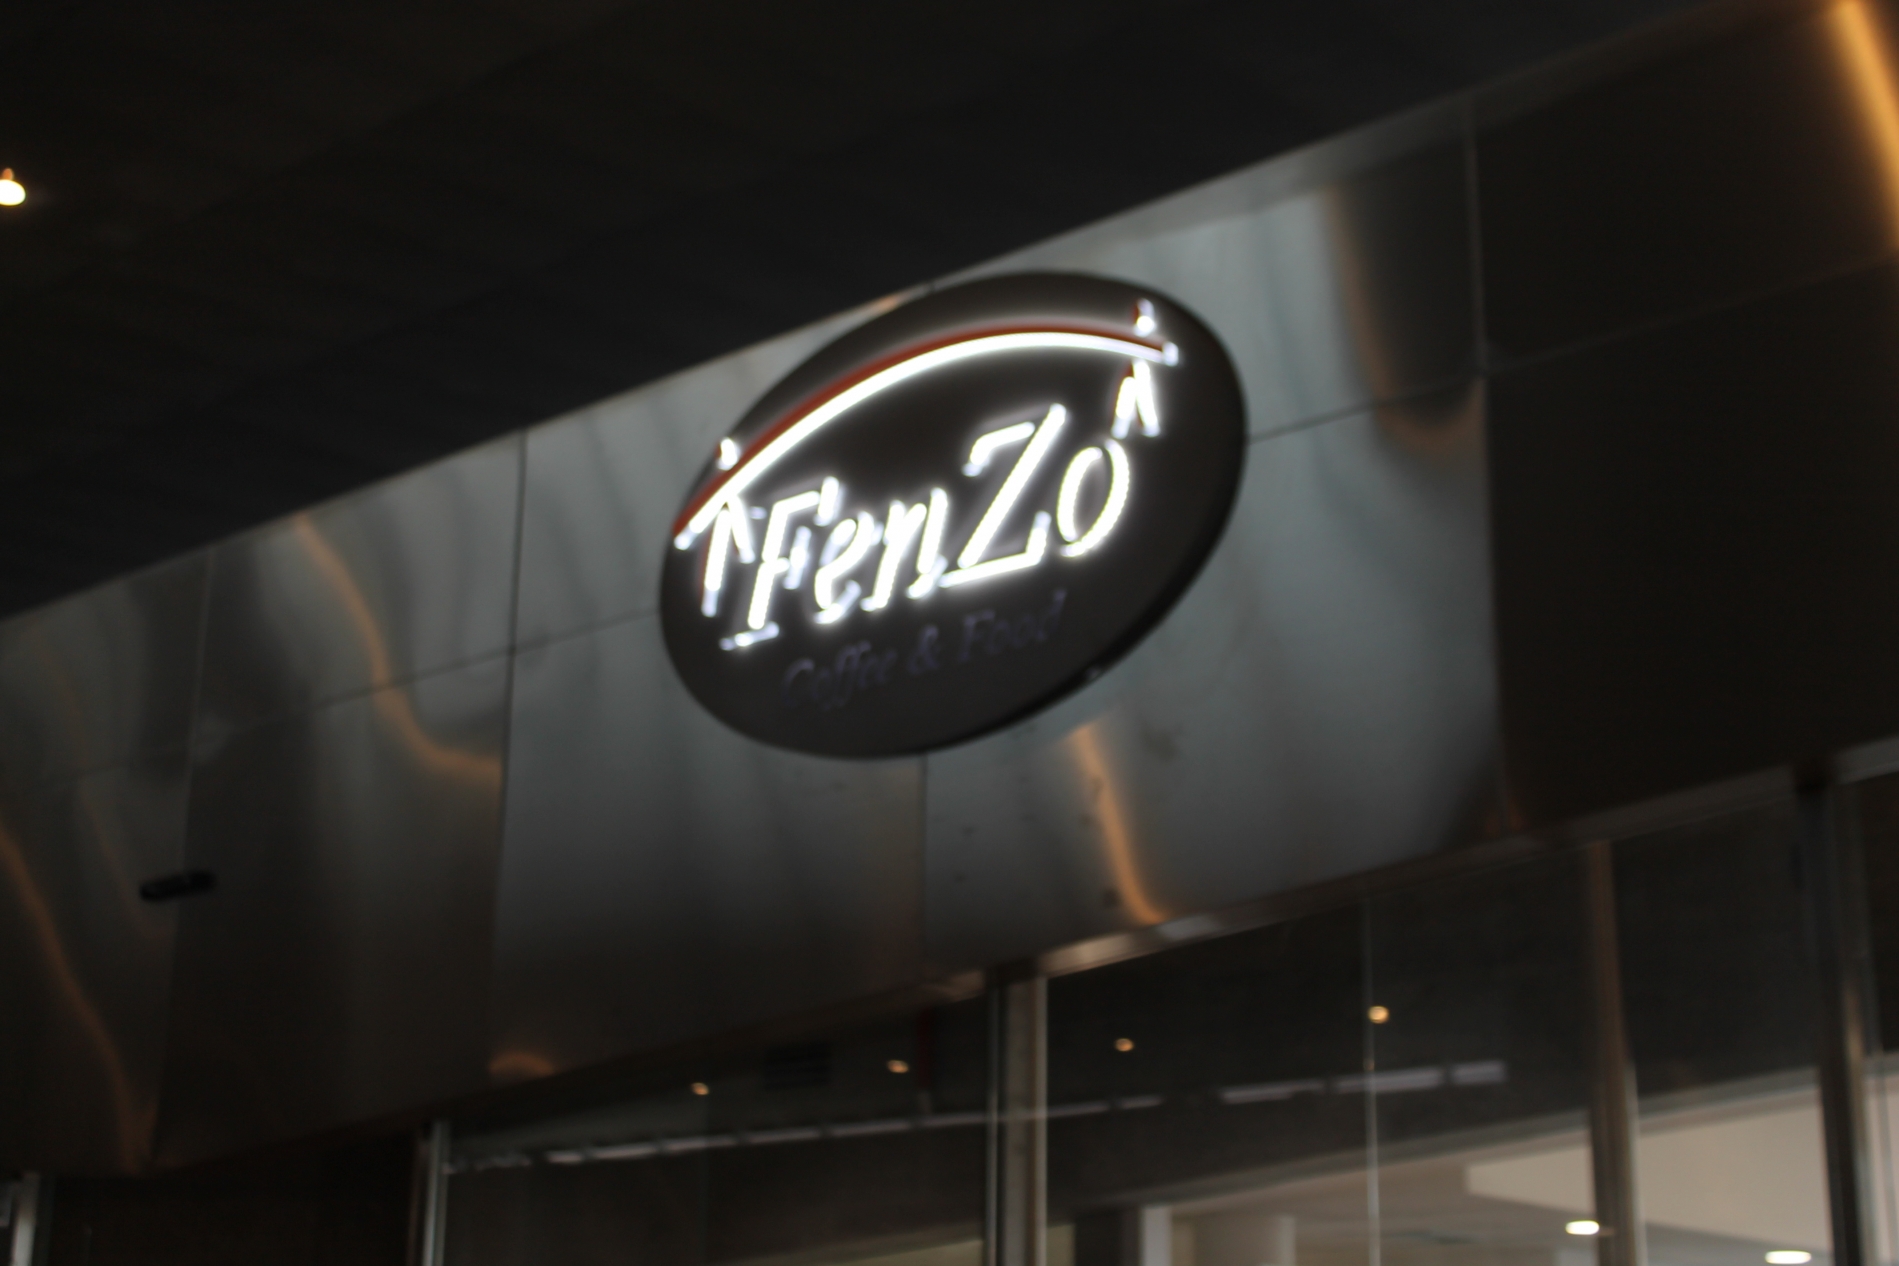 Bar Fenzo